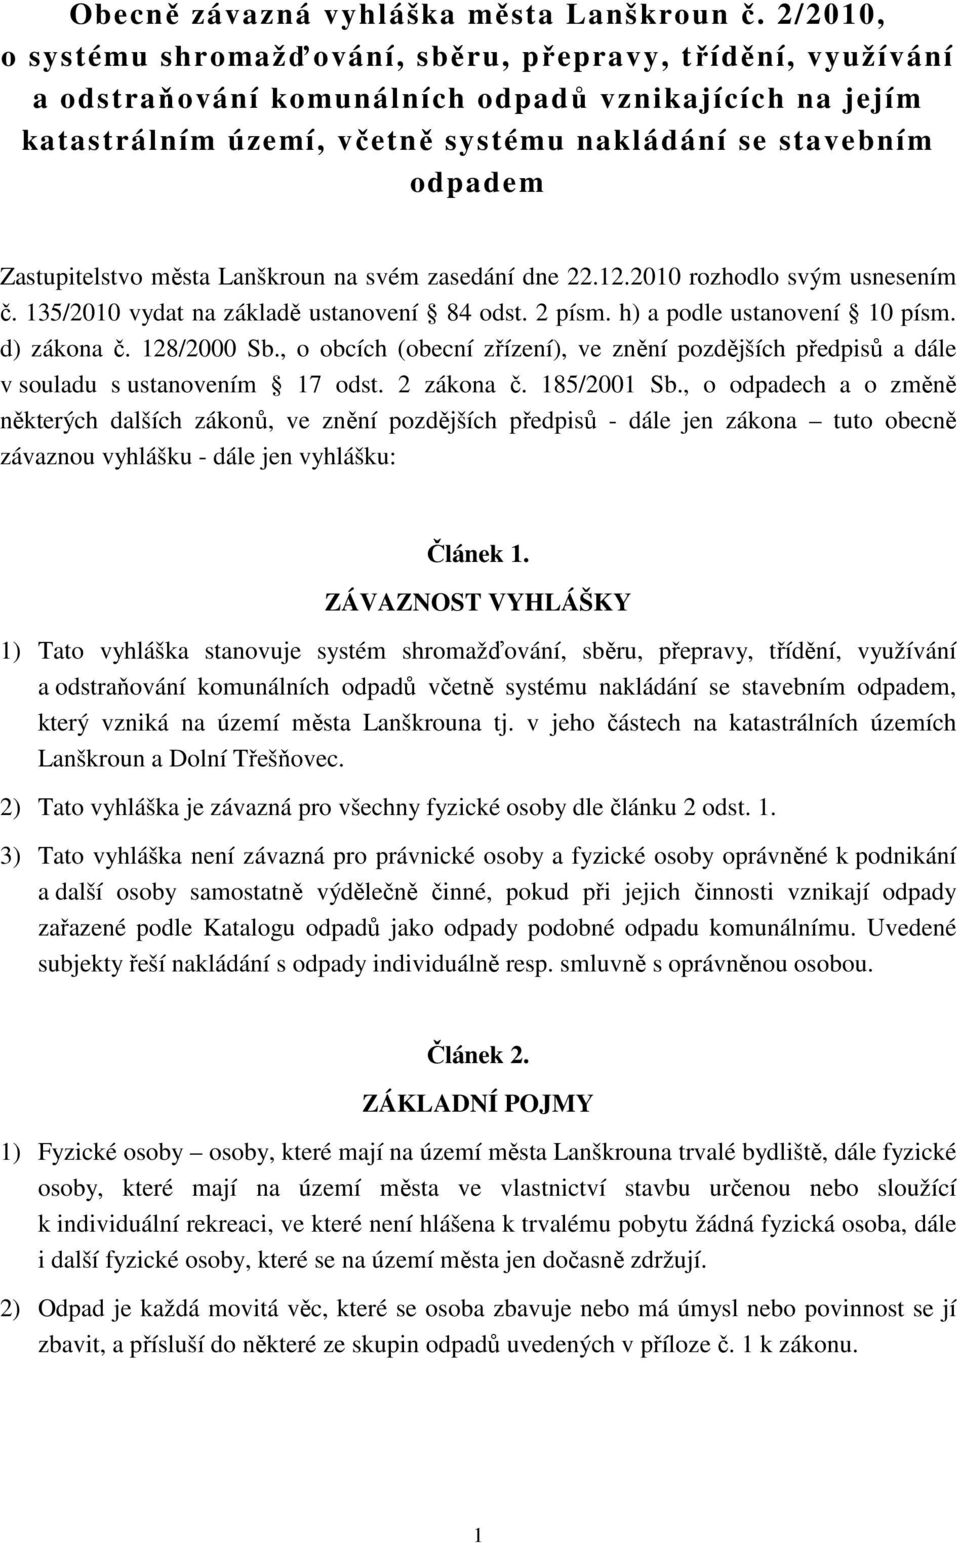 Zastupitelstvo města Lanškroun na svém zasedání dne 22.12.2010 rozhodlo svým usnesením č. 135/2010 vydat na základě ustanovení 84 odst. 2 písm. h) a podle ustanovení 10 písm. d) zákona č. 128/2000 Sb.